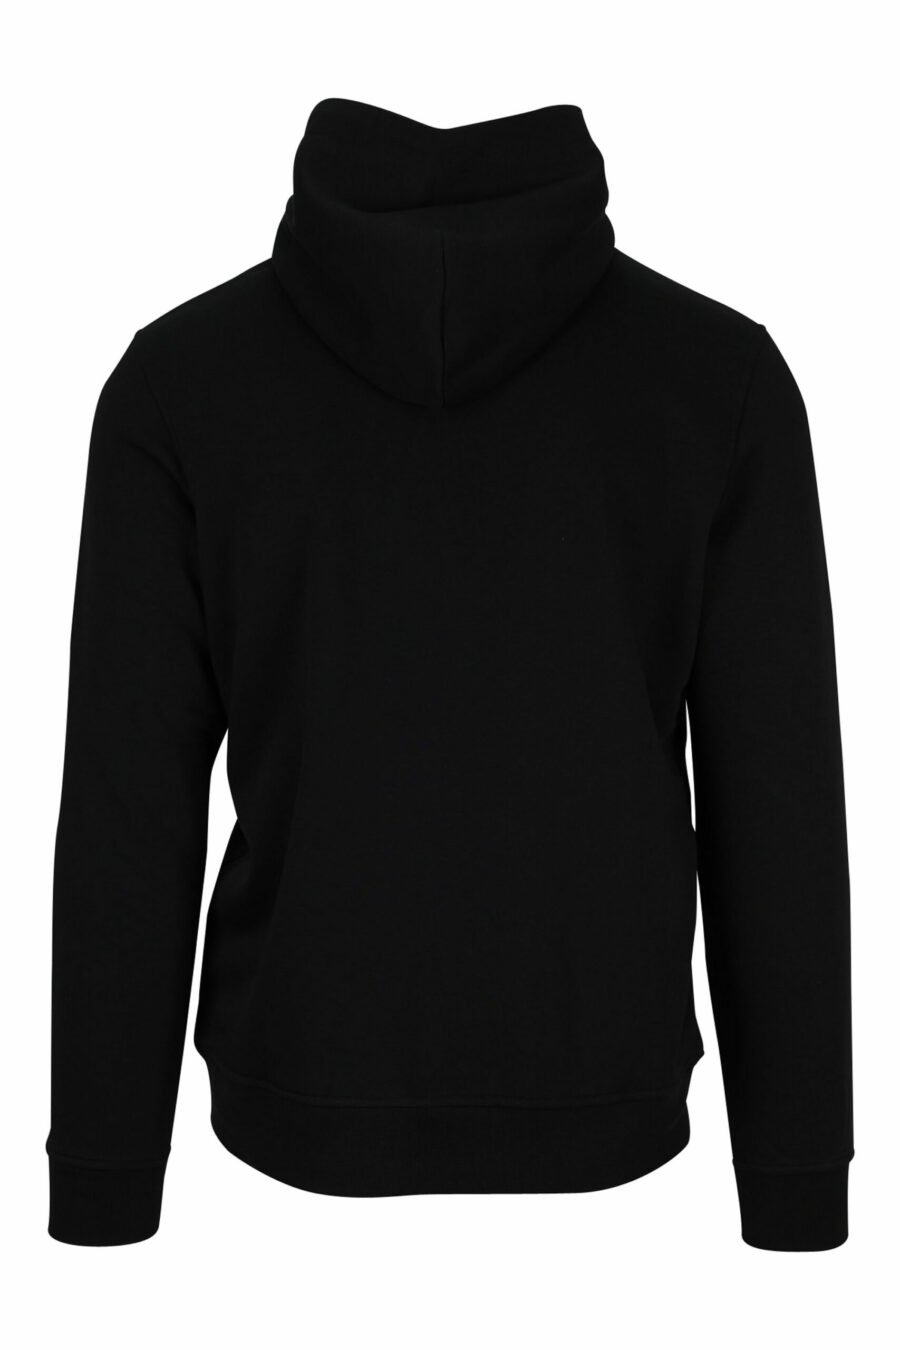 Sweatshirt noir avec capuche et pochette en nylon - 4062226389976 2 échelle